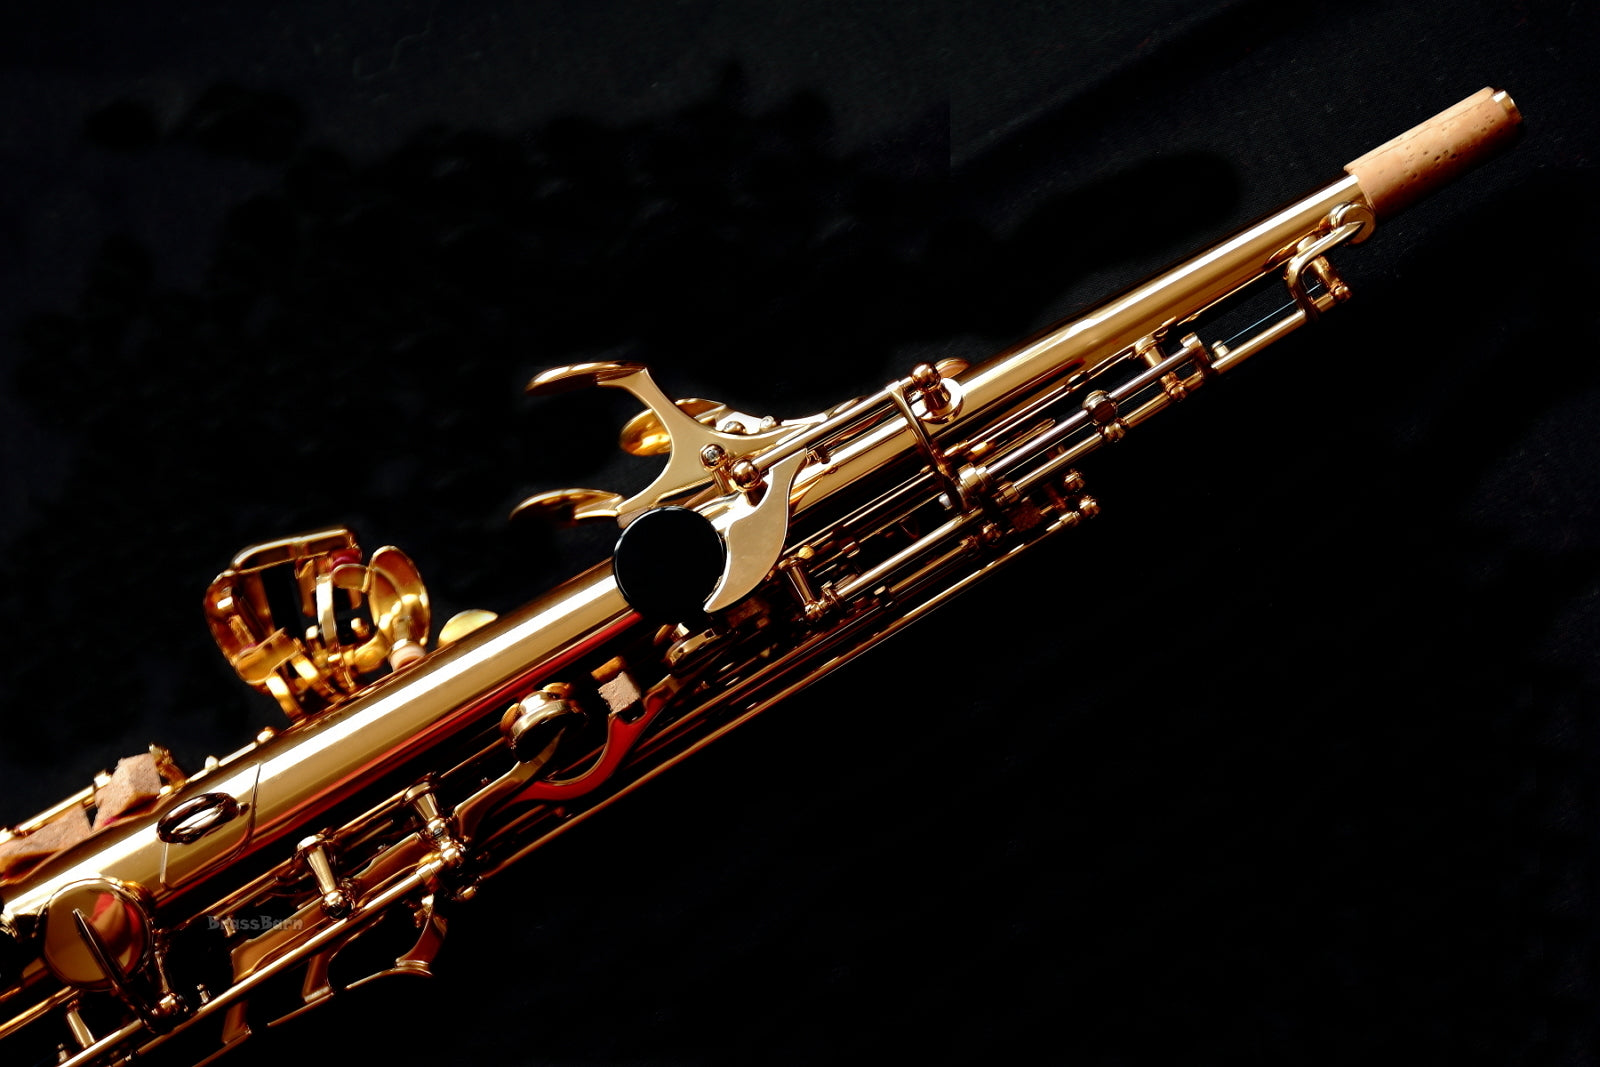 Yamaha YSS-82Z 02 Soprano Saxophone – BrassBarn